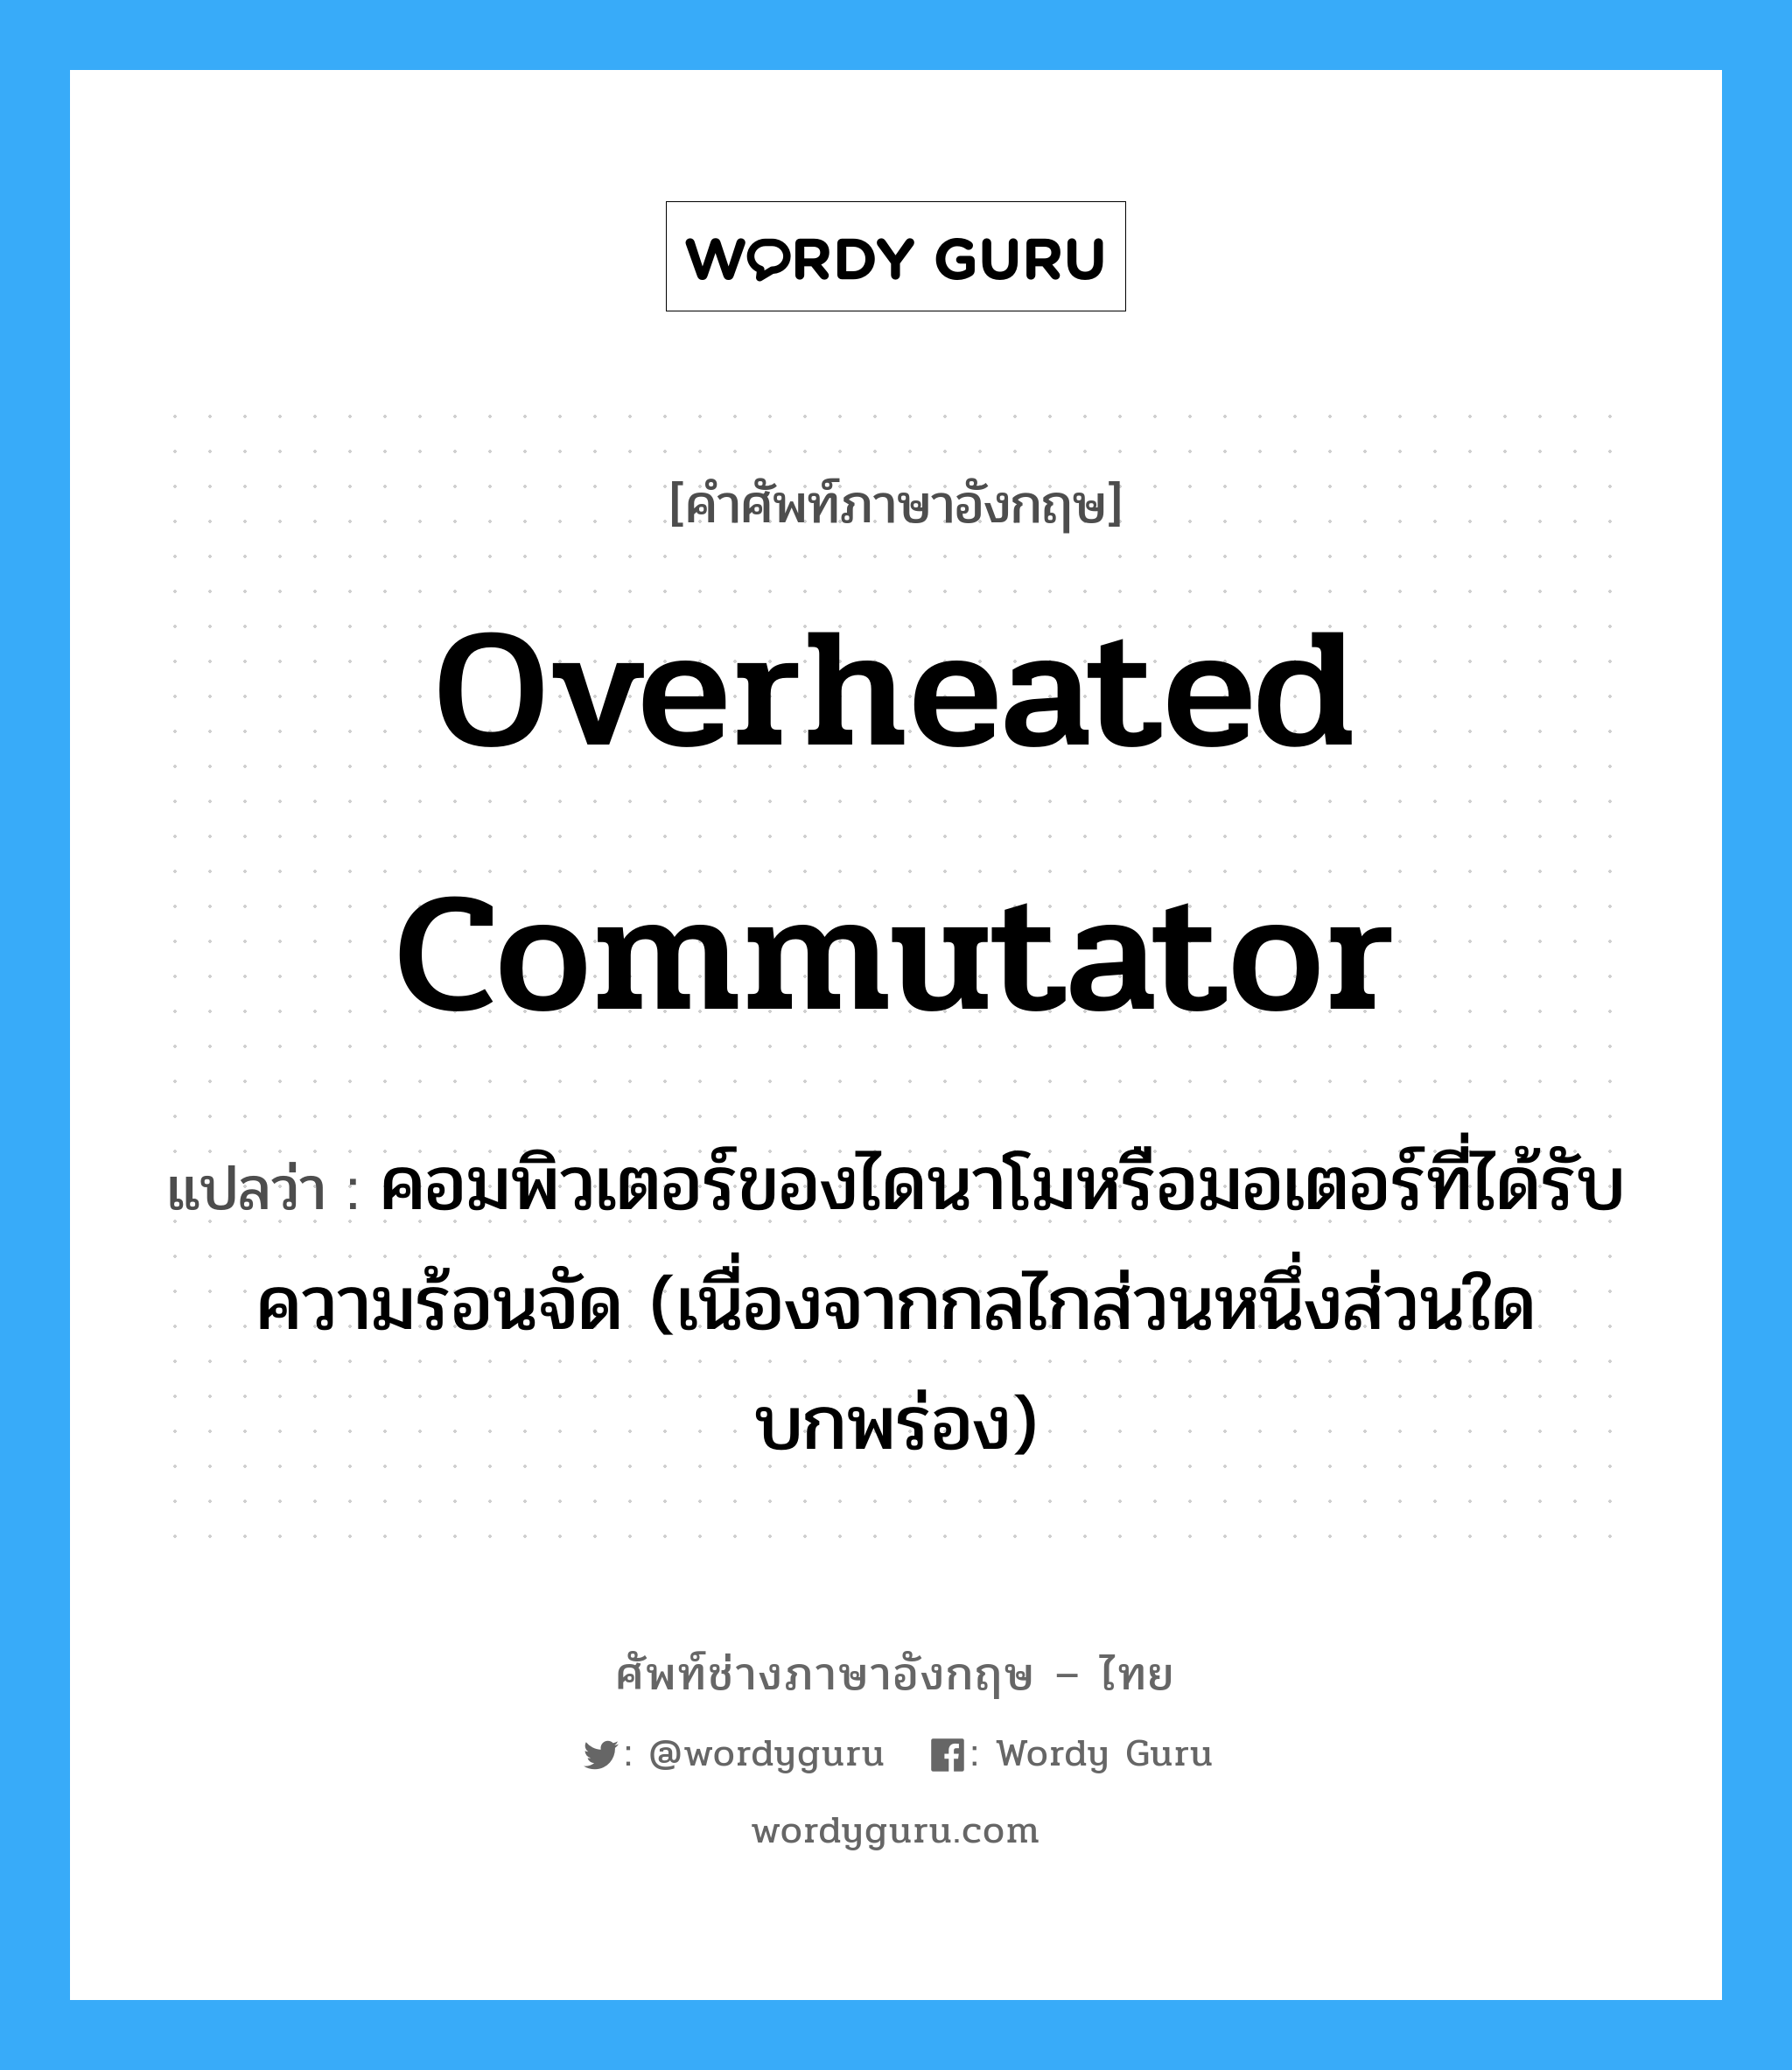 overheated commutator แปลว่า?, คำศัพท์ช่างภาษาอังกฤษ - ไทย overheated commutator คำศัพท์ภาษาอังกฤษ overheated commutator แปลว่า คอมพิวเตอร์ของไดนาโมหรือมอเตอร์ที่ได้รับความร้อนจัด (เนื่องจากกลไกส่วนหนึ่งส่วนใดบกพร่อง)